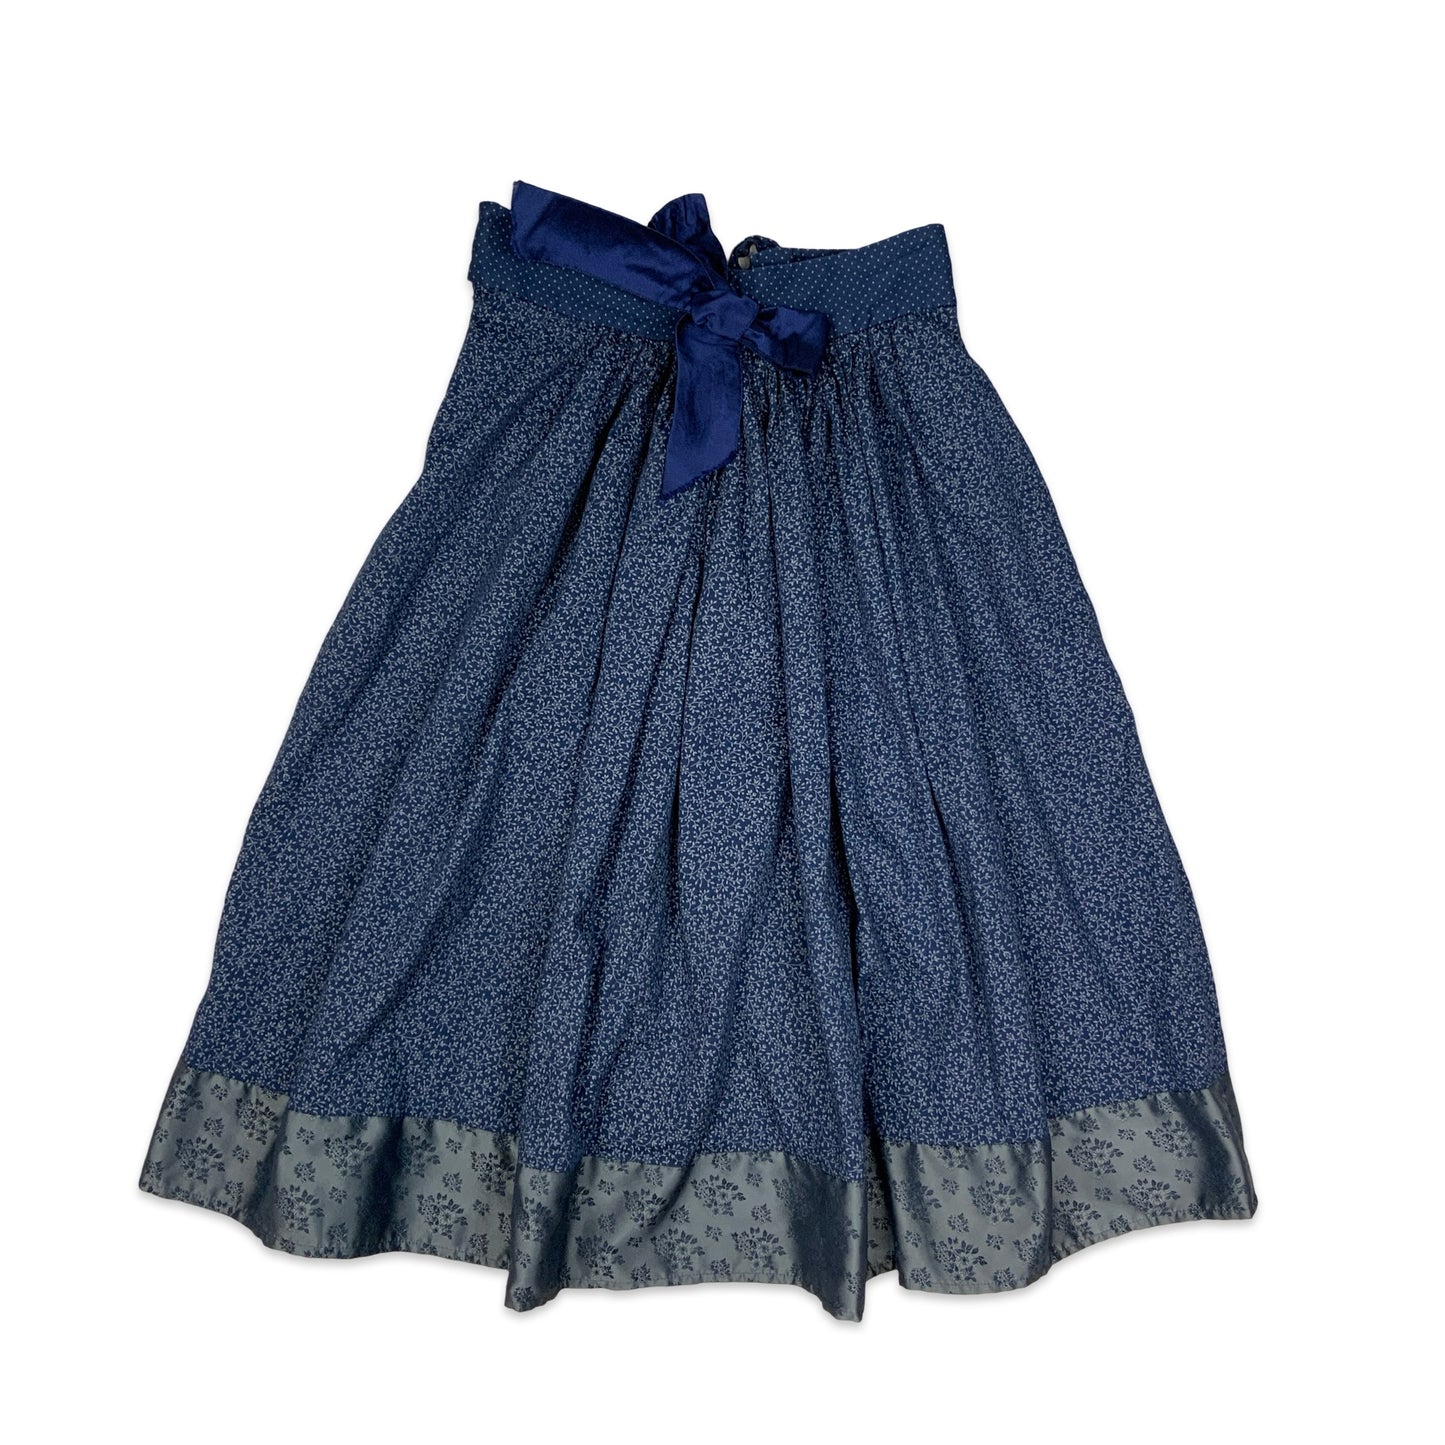 Vintage Blue Ditsy Floral Pleated Midi Skirt 14 16